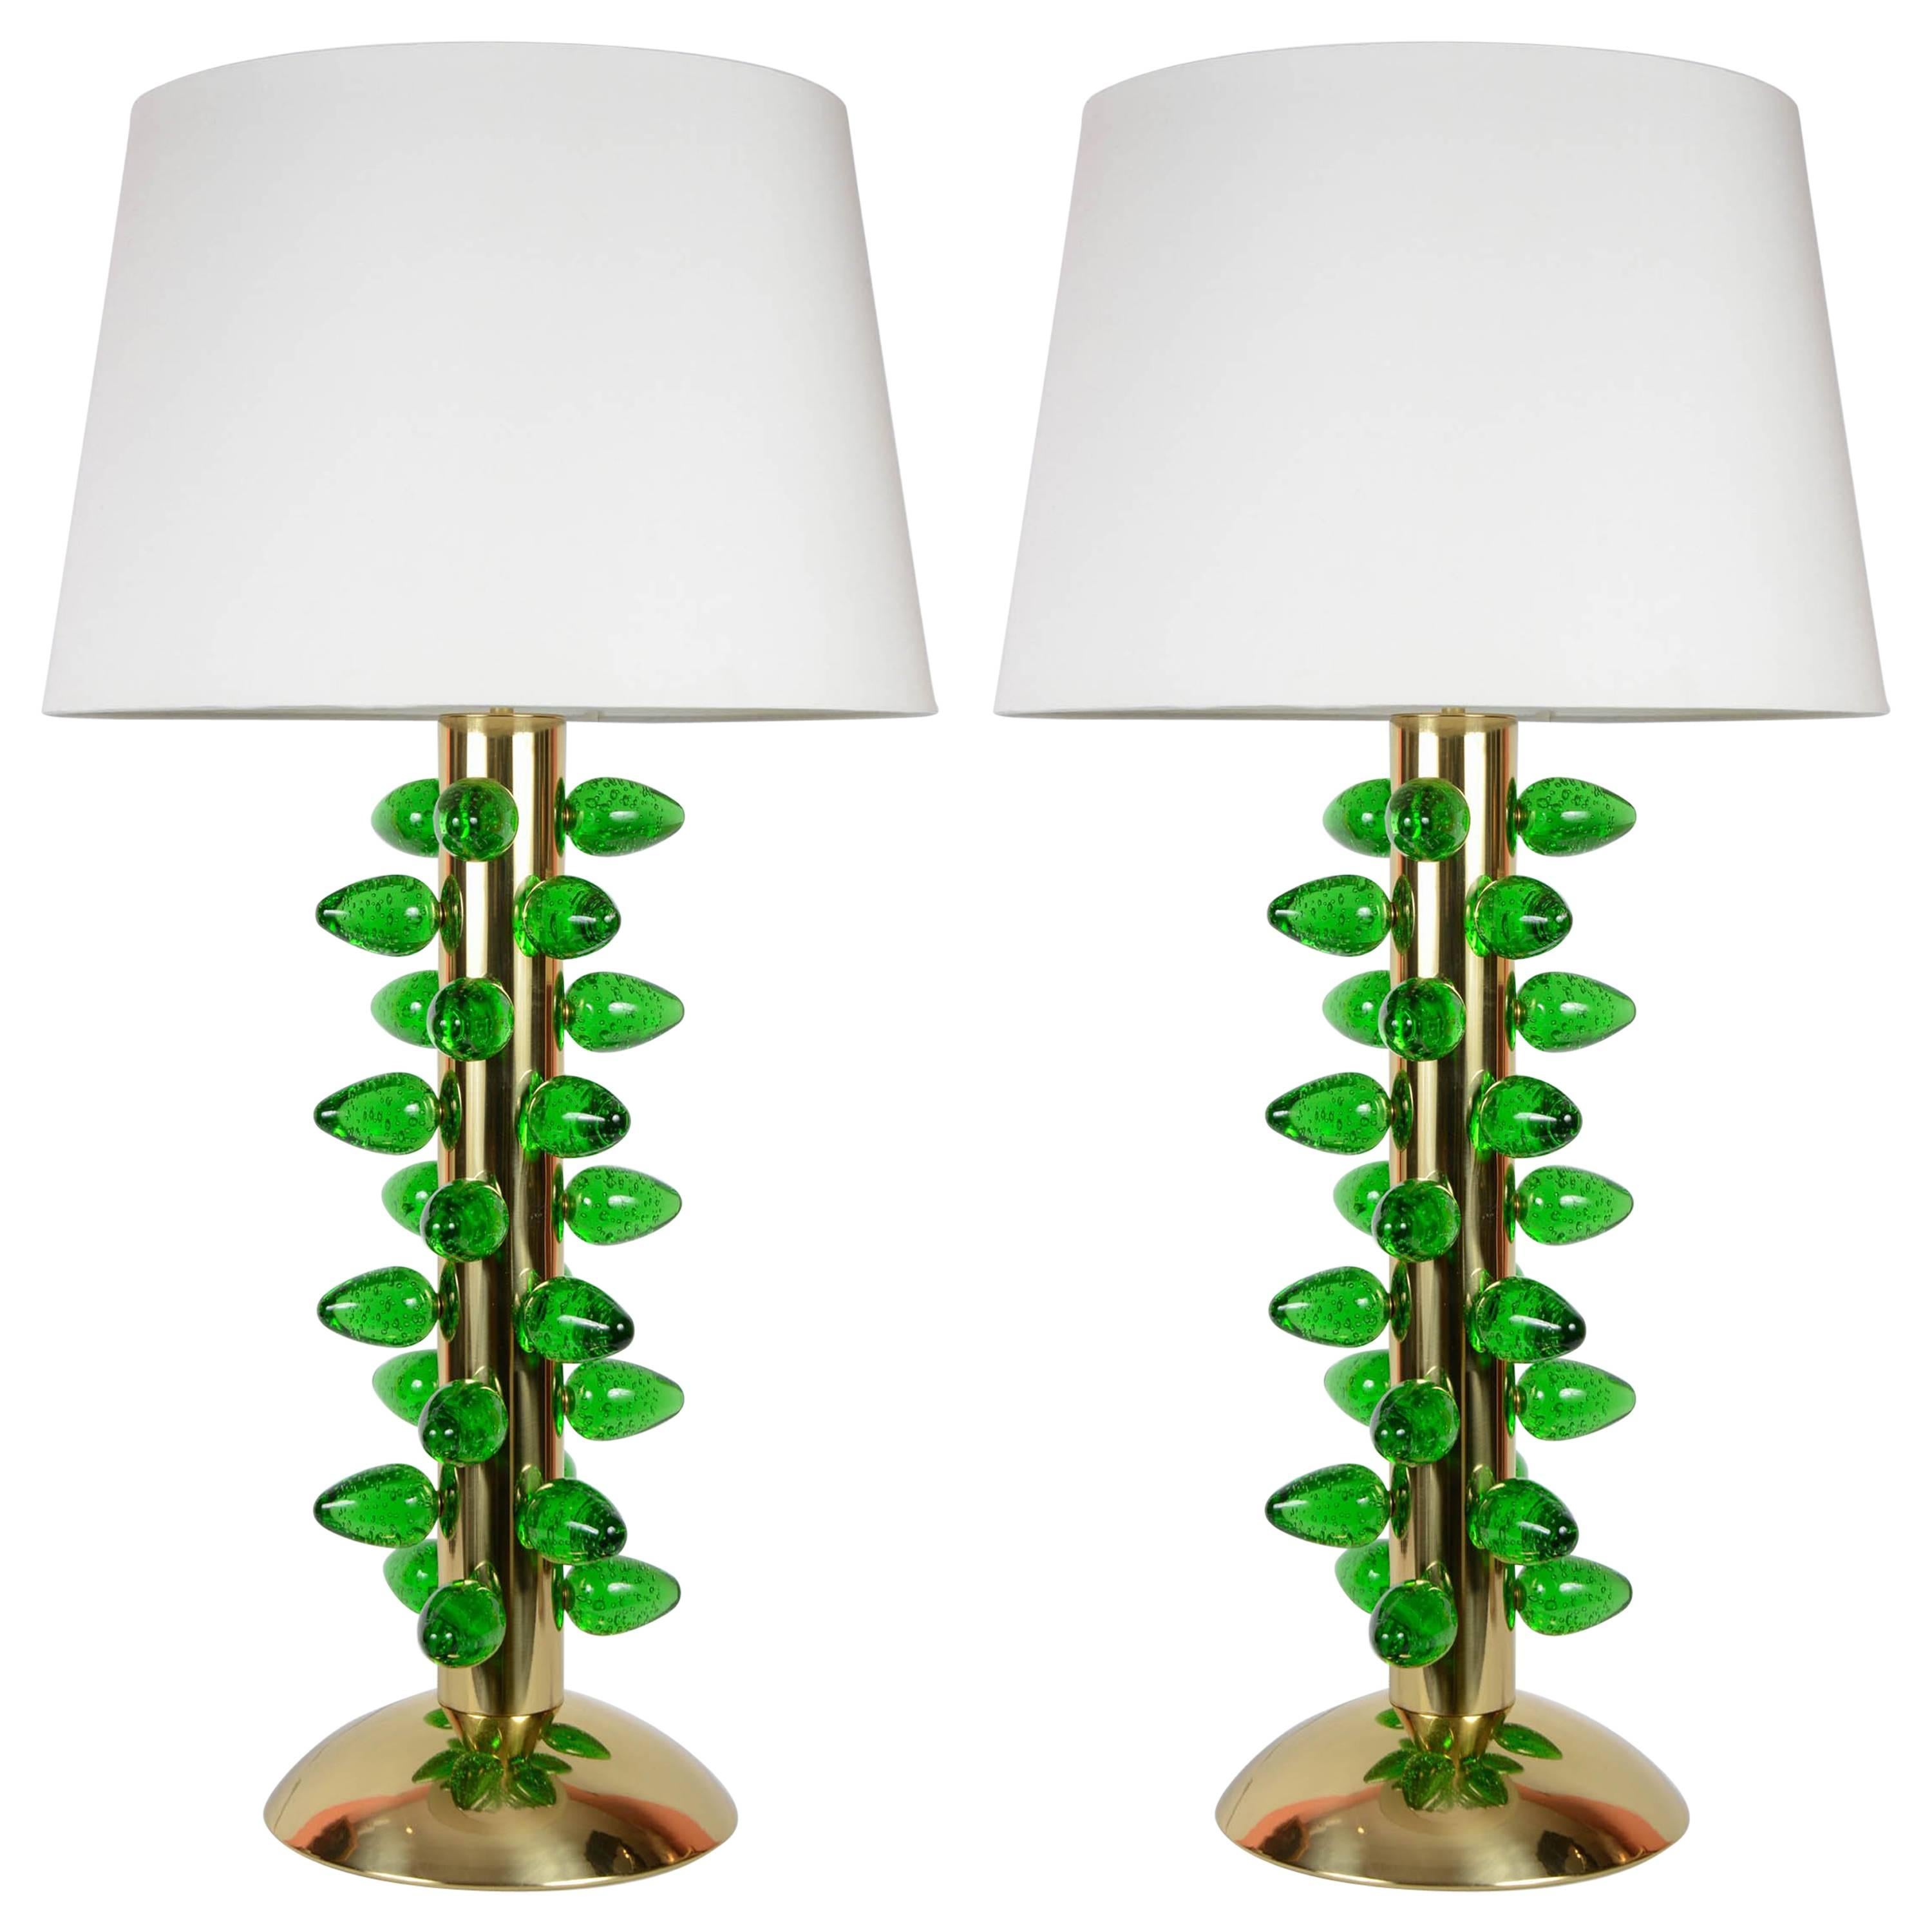 Pair of Lamps by Juanluca Fontana